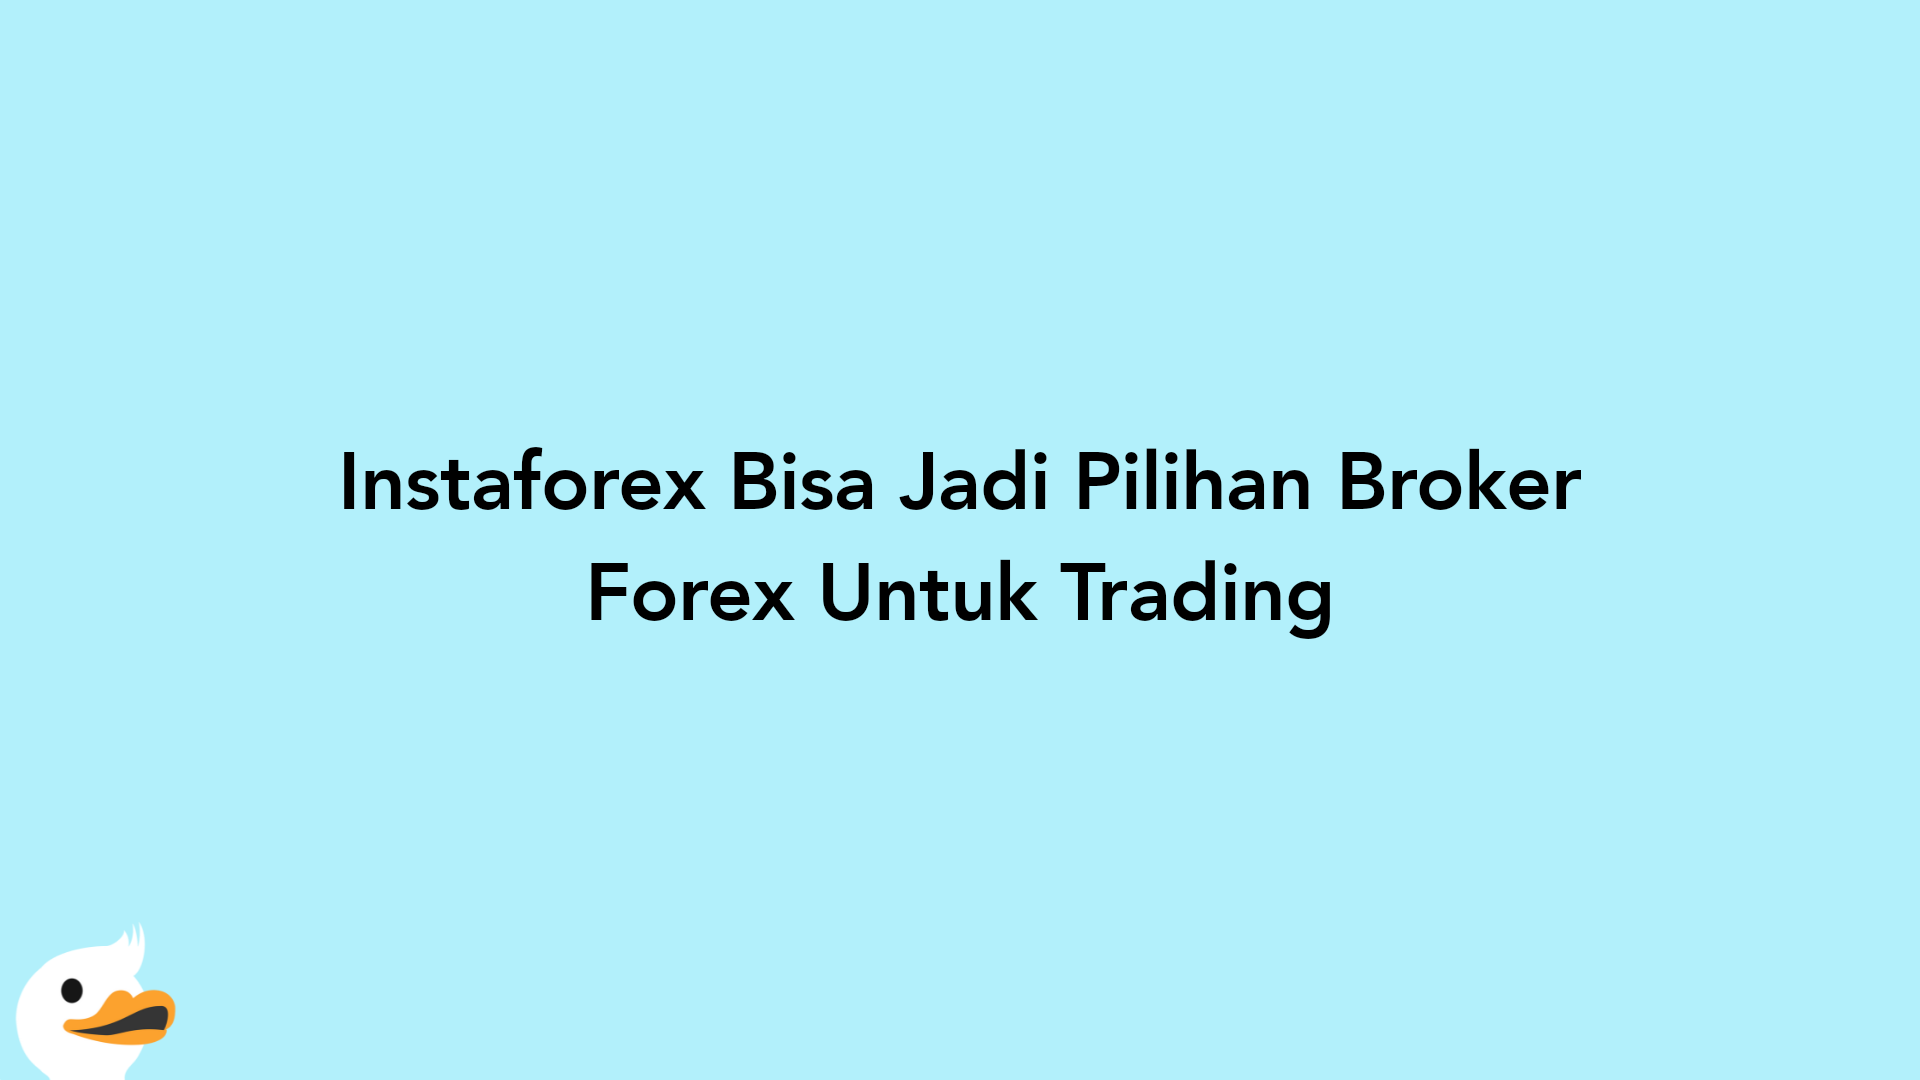 Instaforex Bisa Jadi Pilihan Broker Forex Untuk Trading